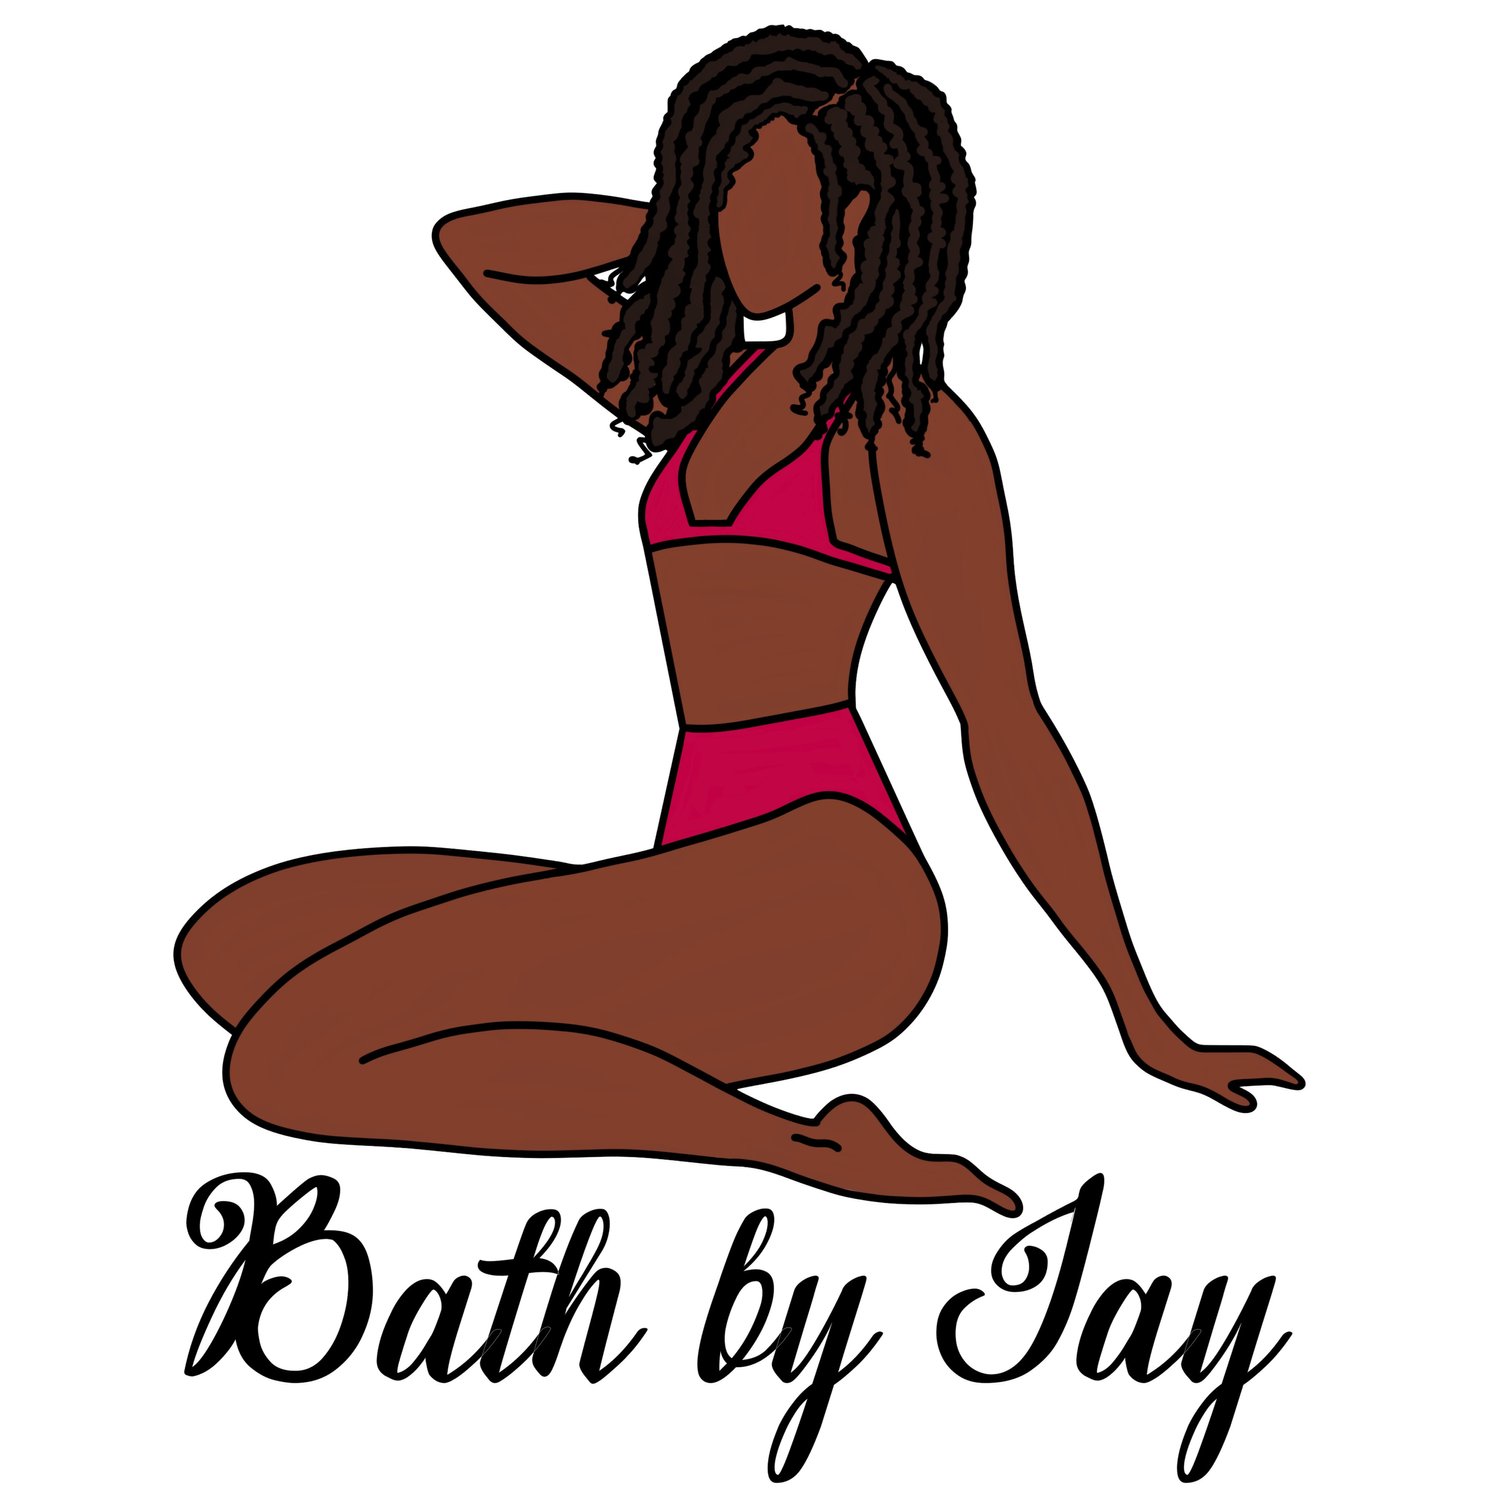 Bath by Jay